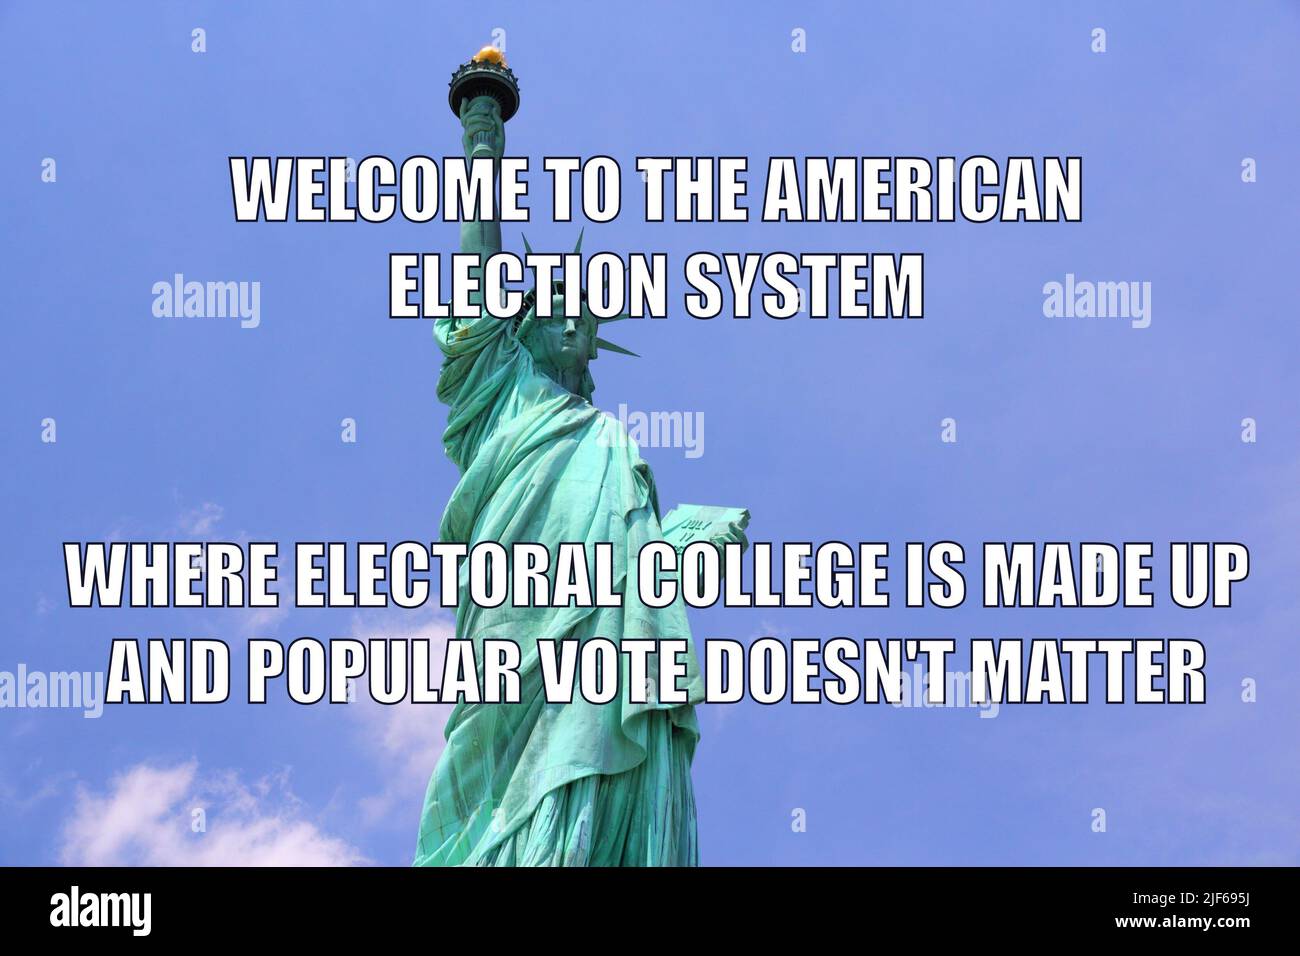 Il sistema elettorale americano divertente meme per la condivisione dei social media. Umorismo sulla politica statunitense, sulle college elettorali e sulle elezioni. Foto Stock